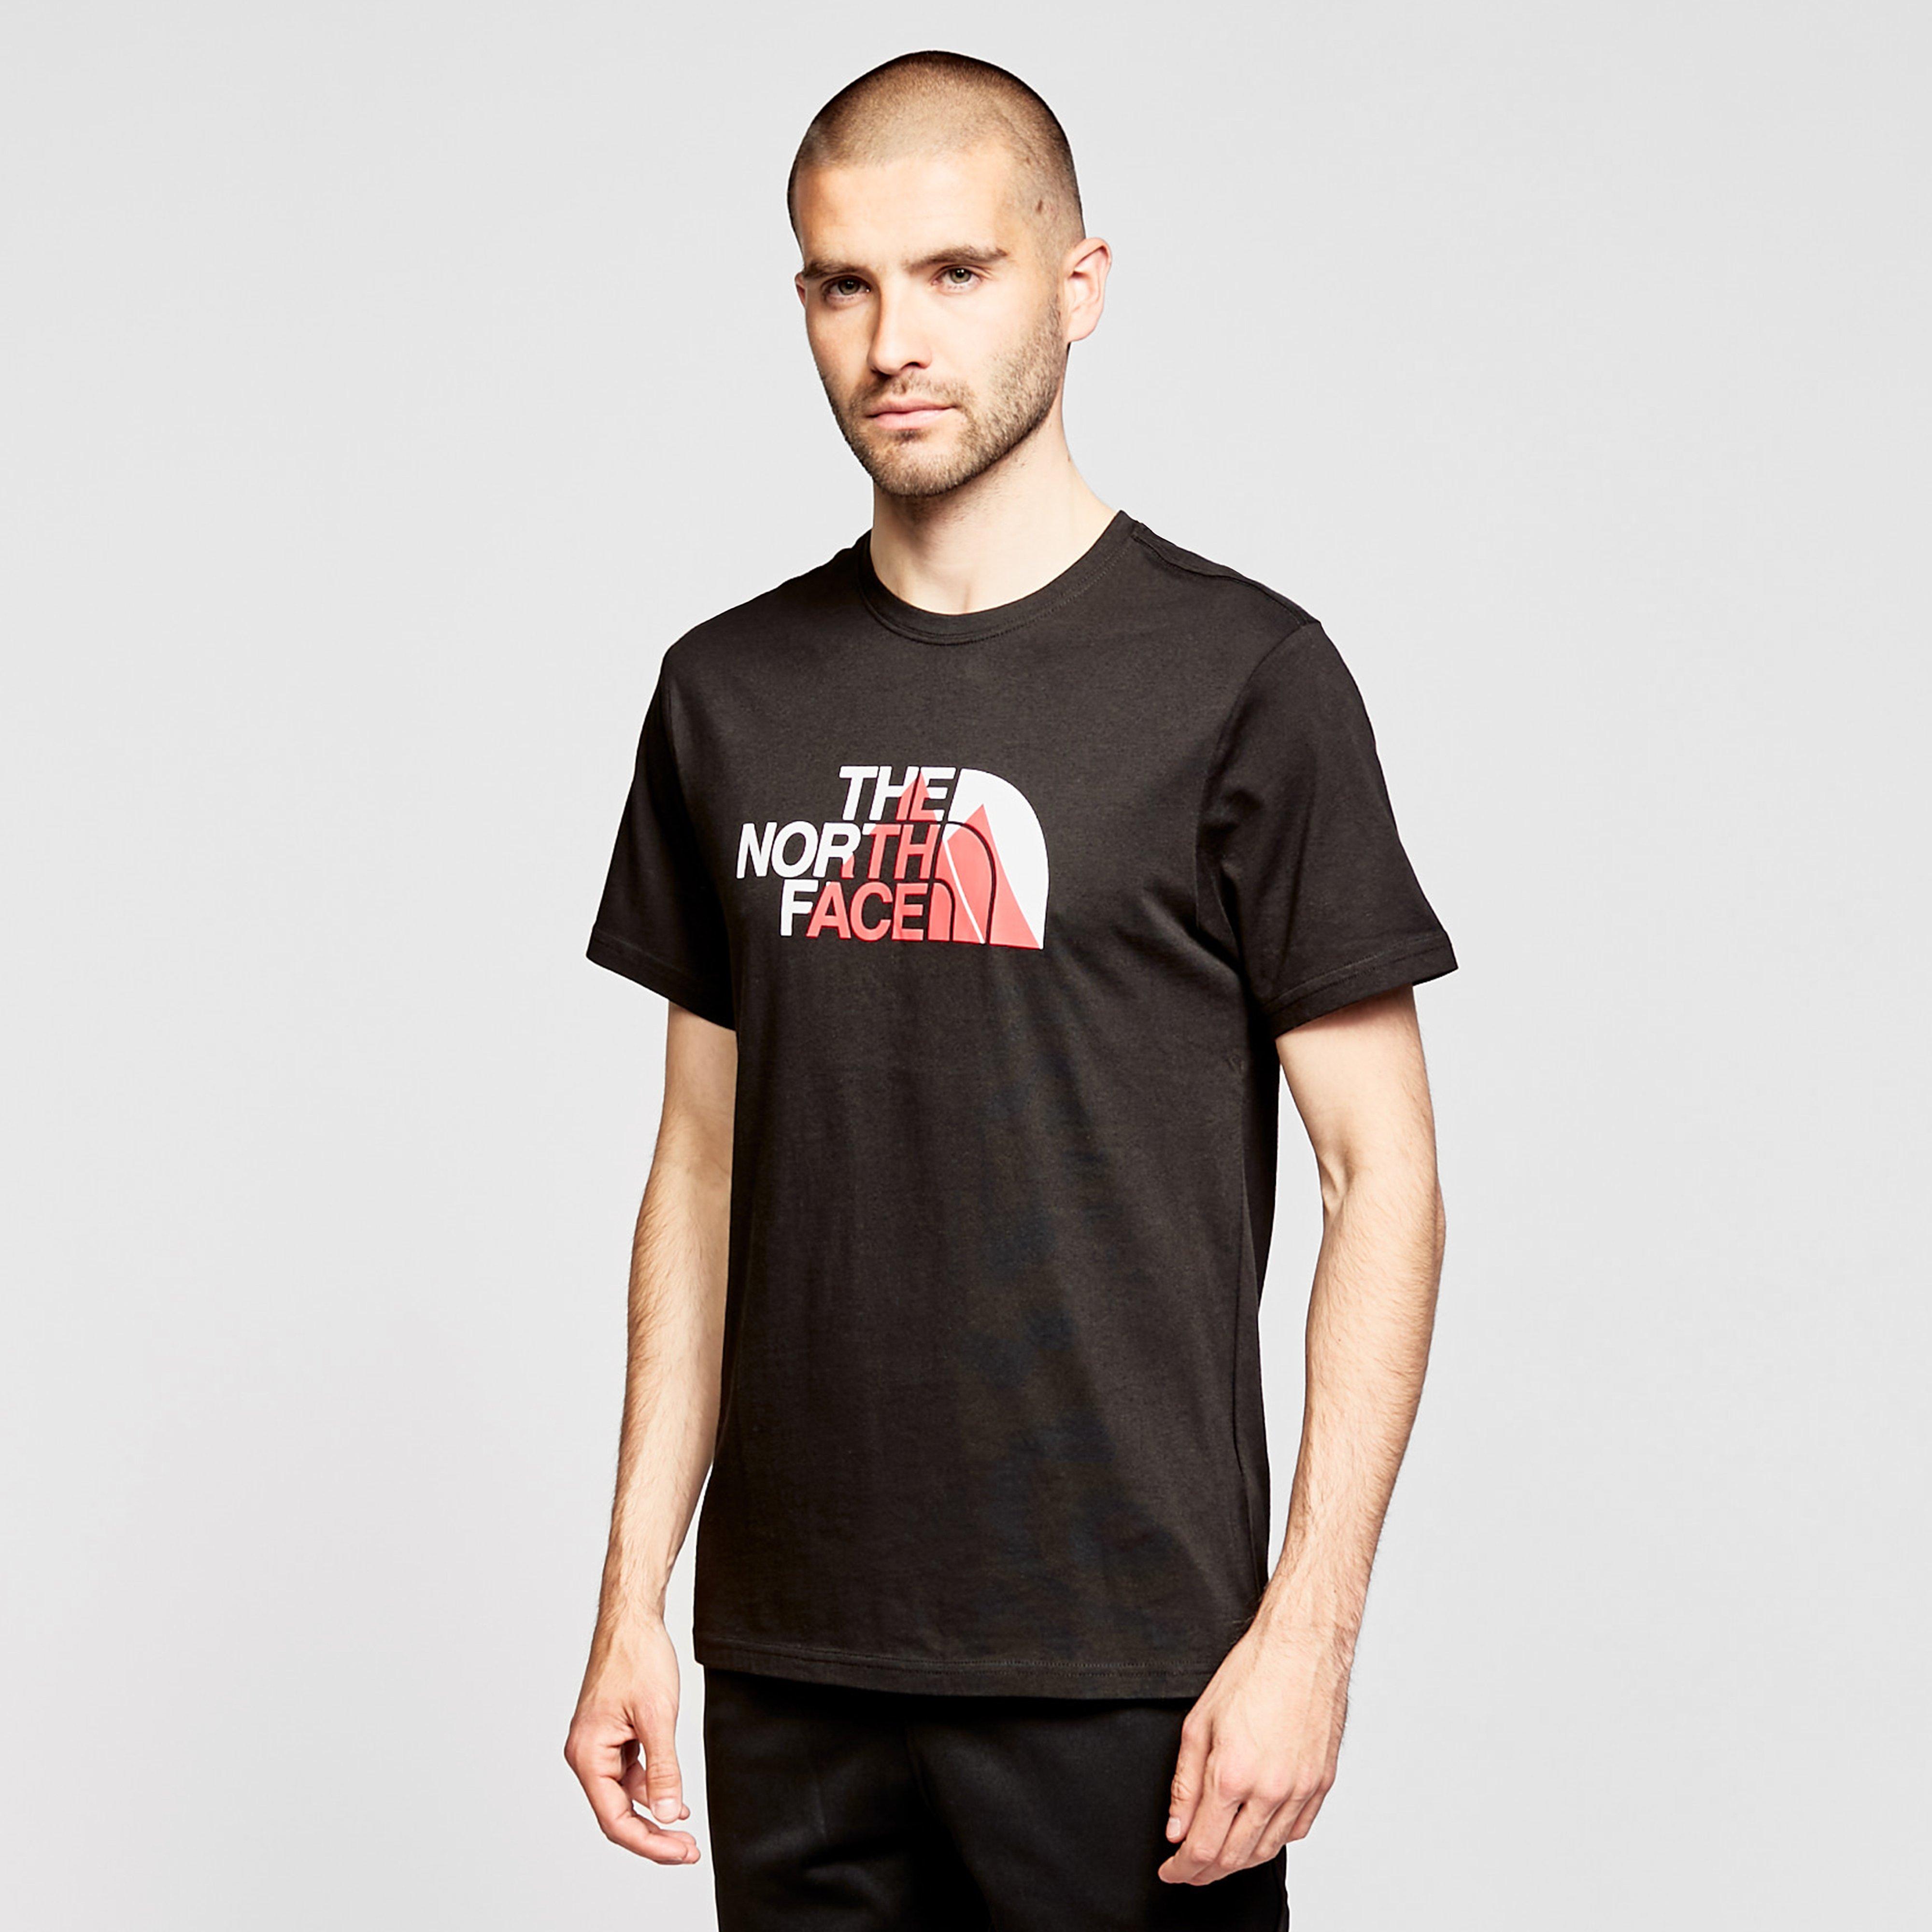 The North Face Mens Biner 1 T-shirt - Black/blk  Black/blk